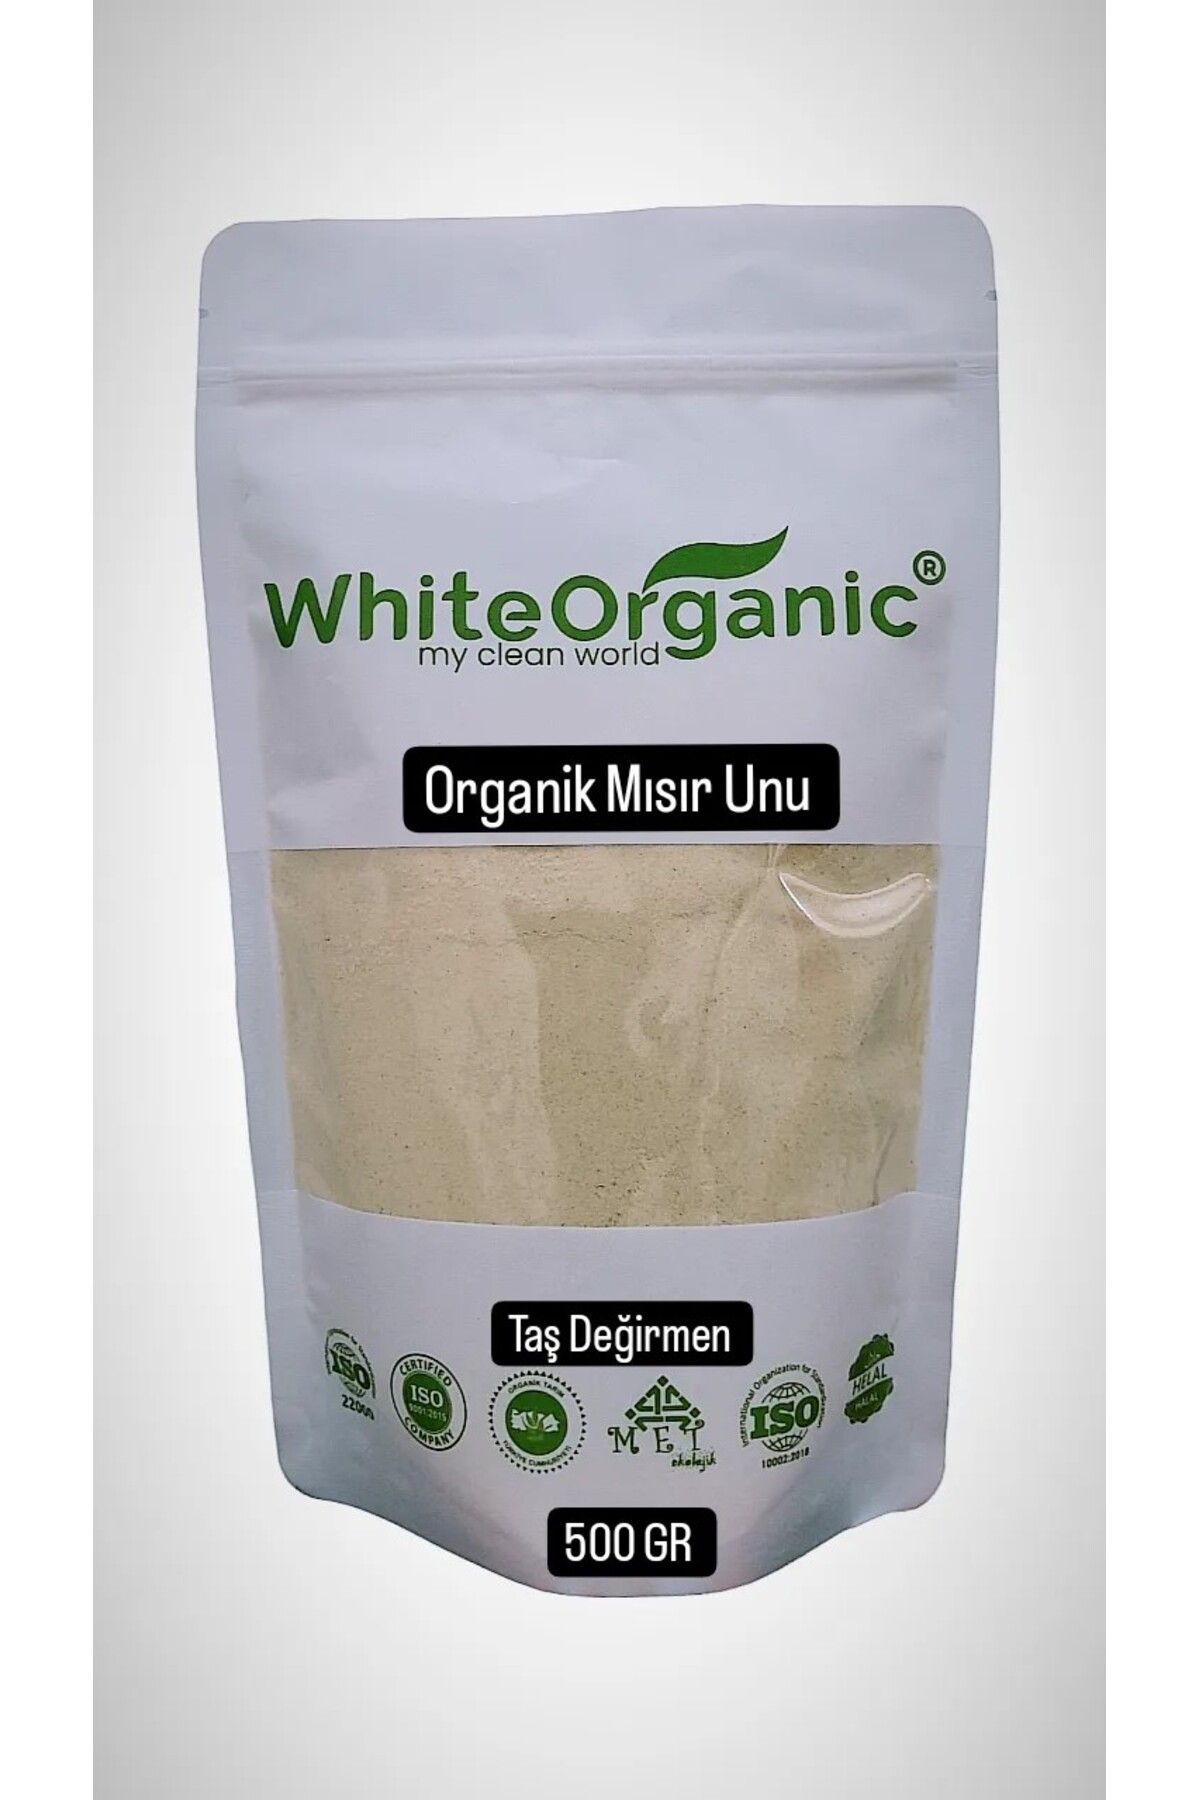 White Organic Organik Mısır Unu 500 gr Taş Değirmen Atalık Tohum Organic Corn Flour